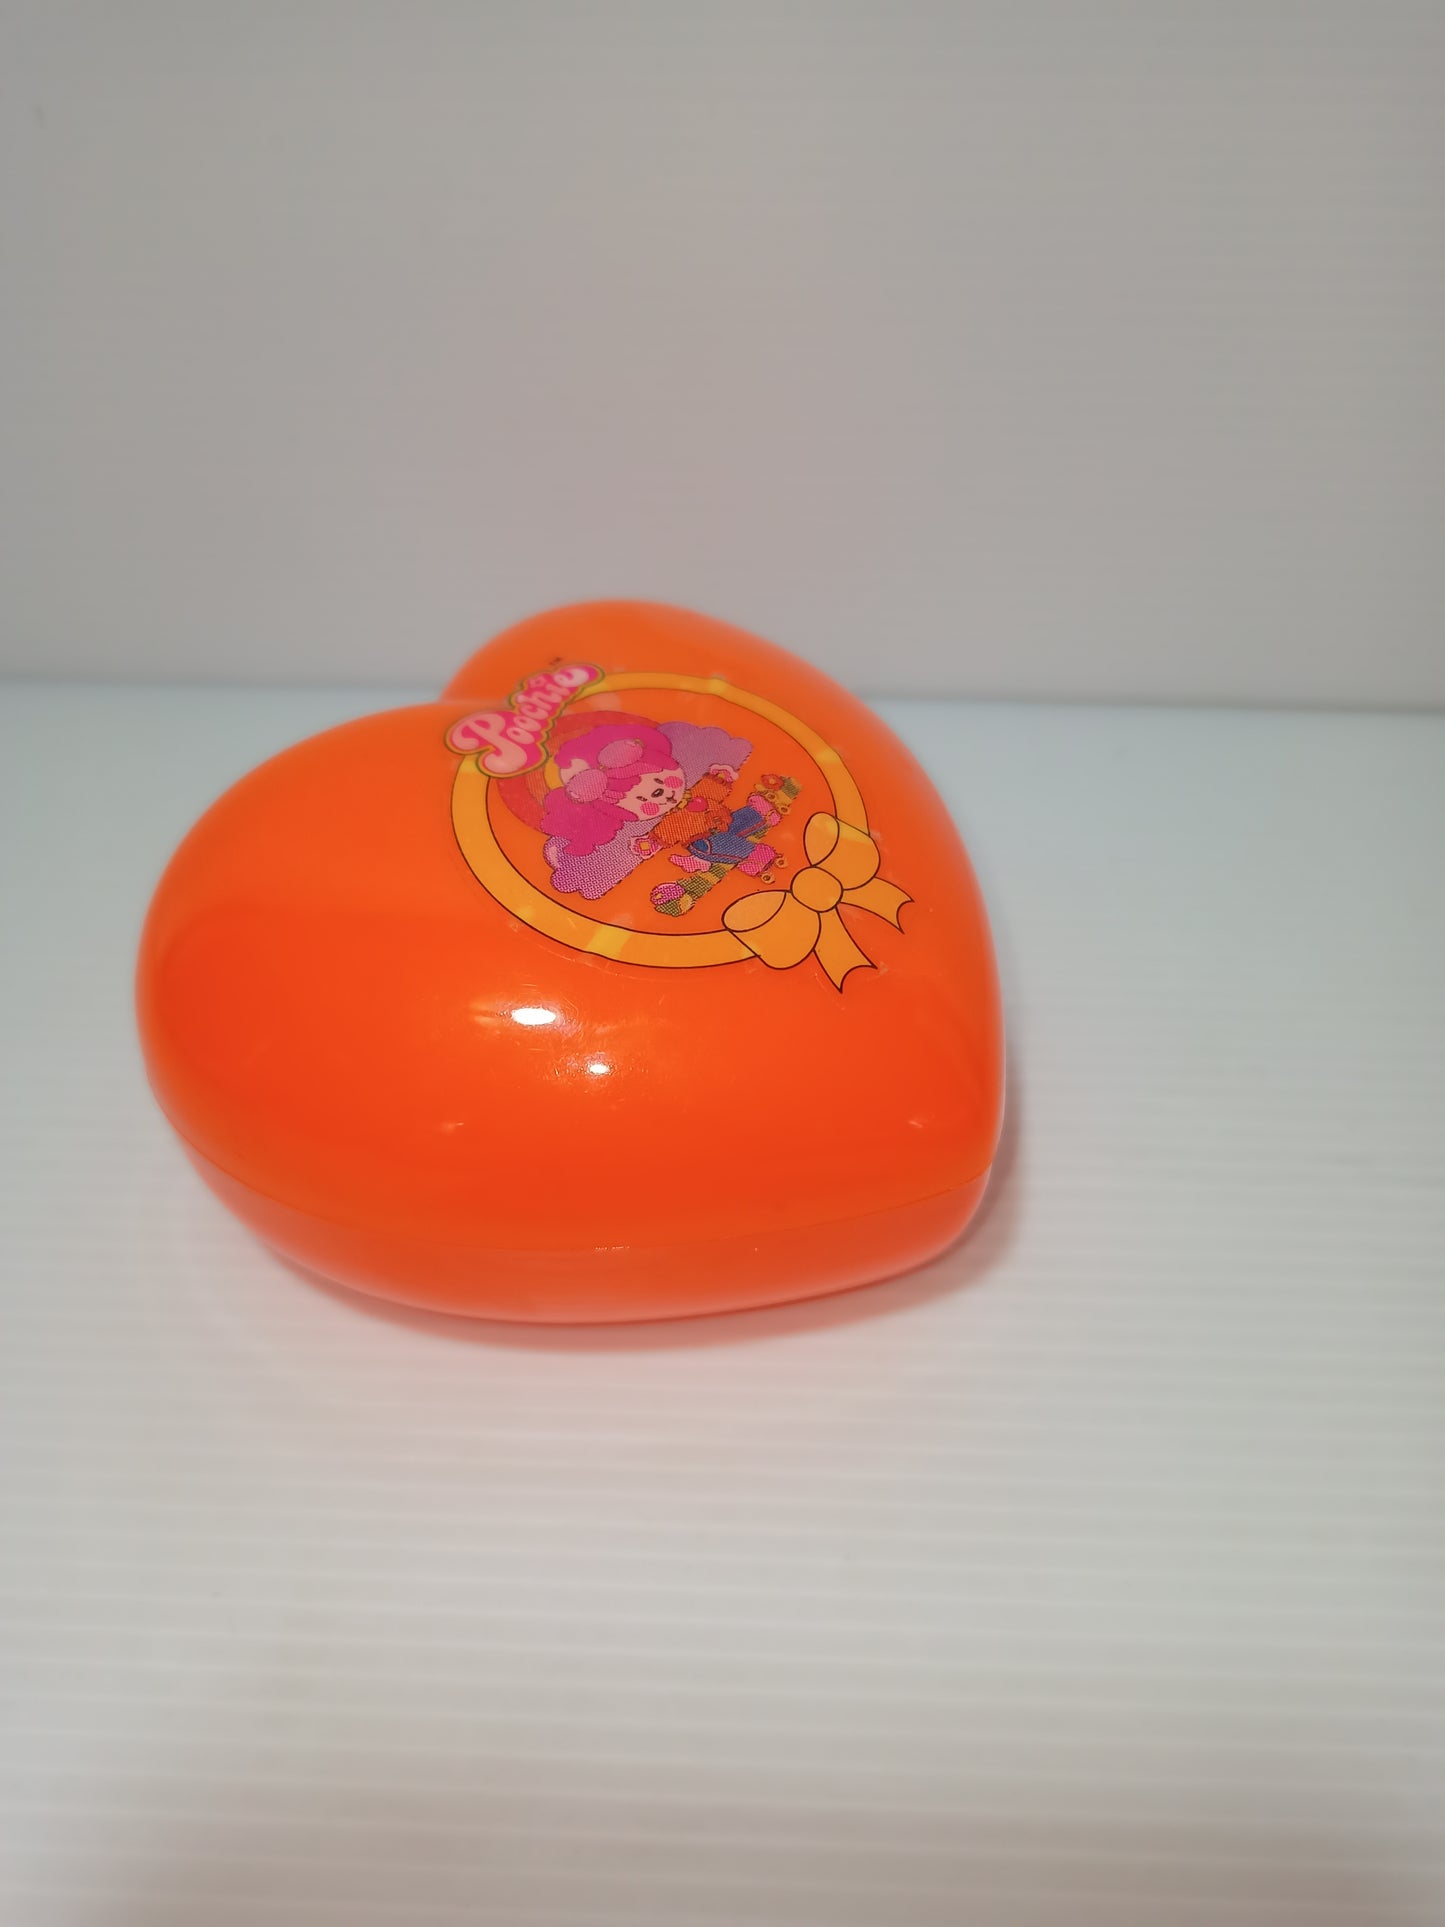 Poochie cuore plastica di colore arancione VUOTO, originale 1988